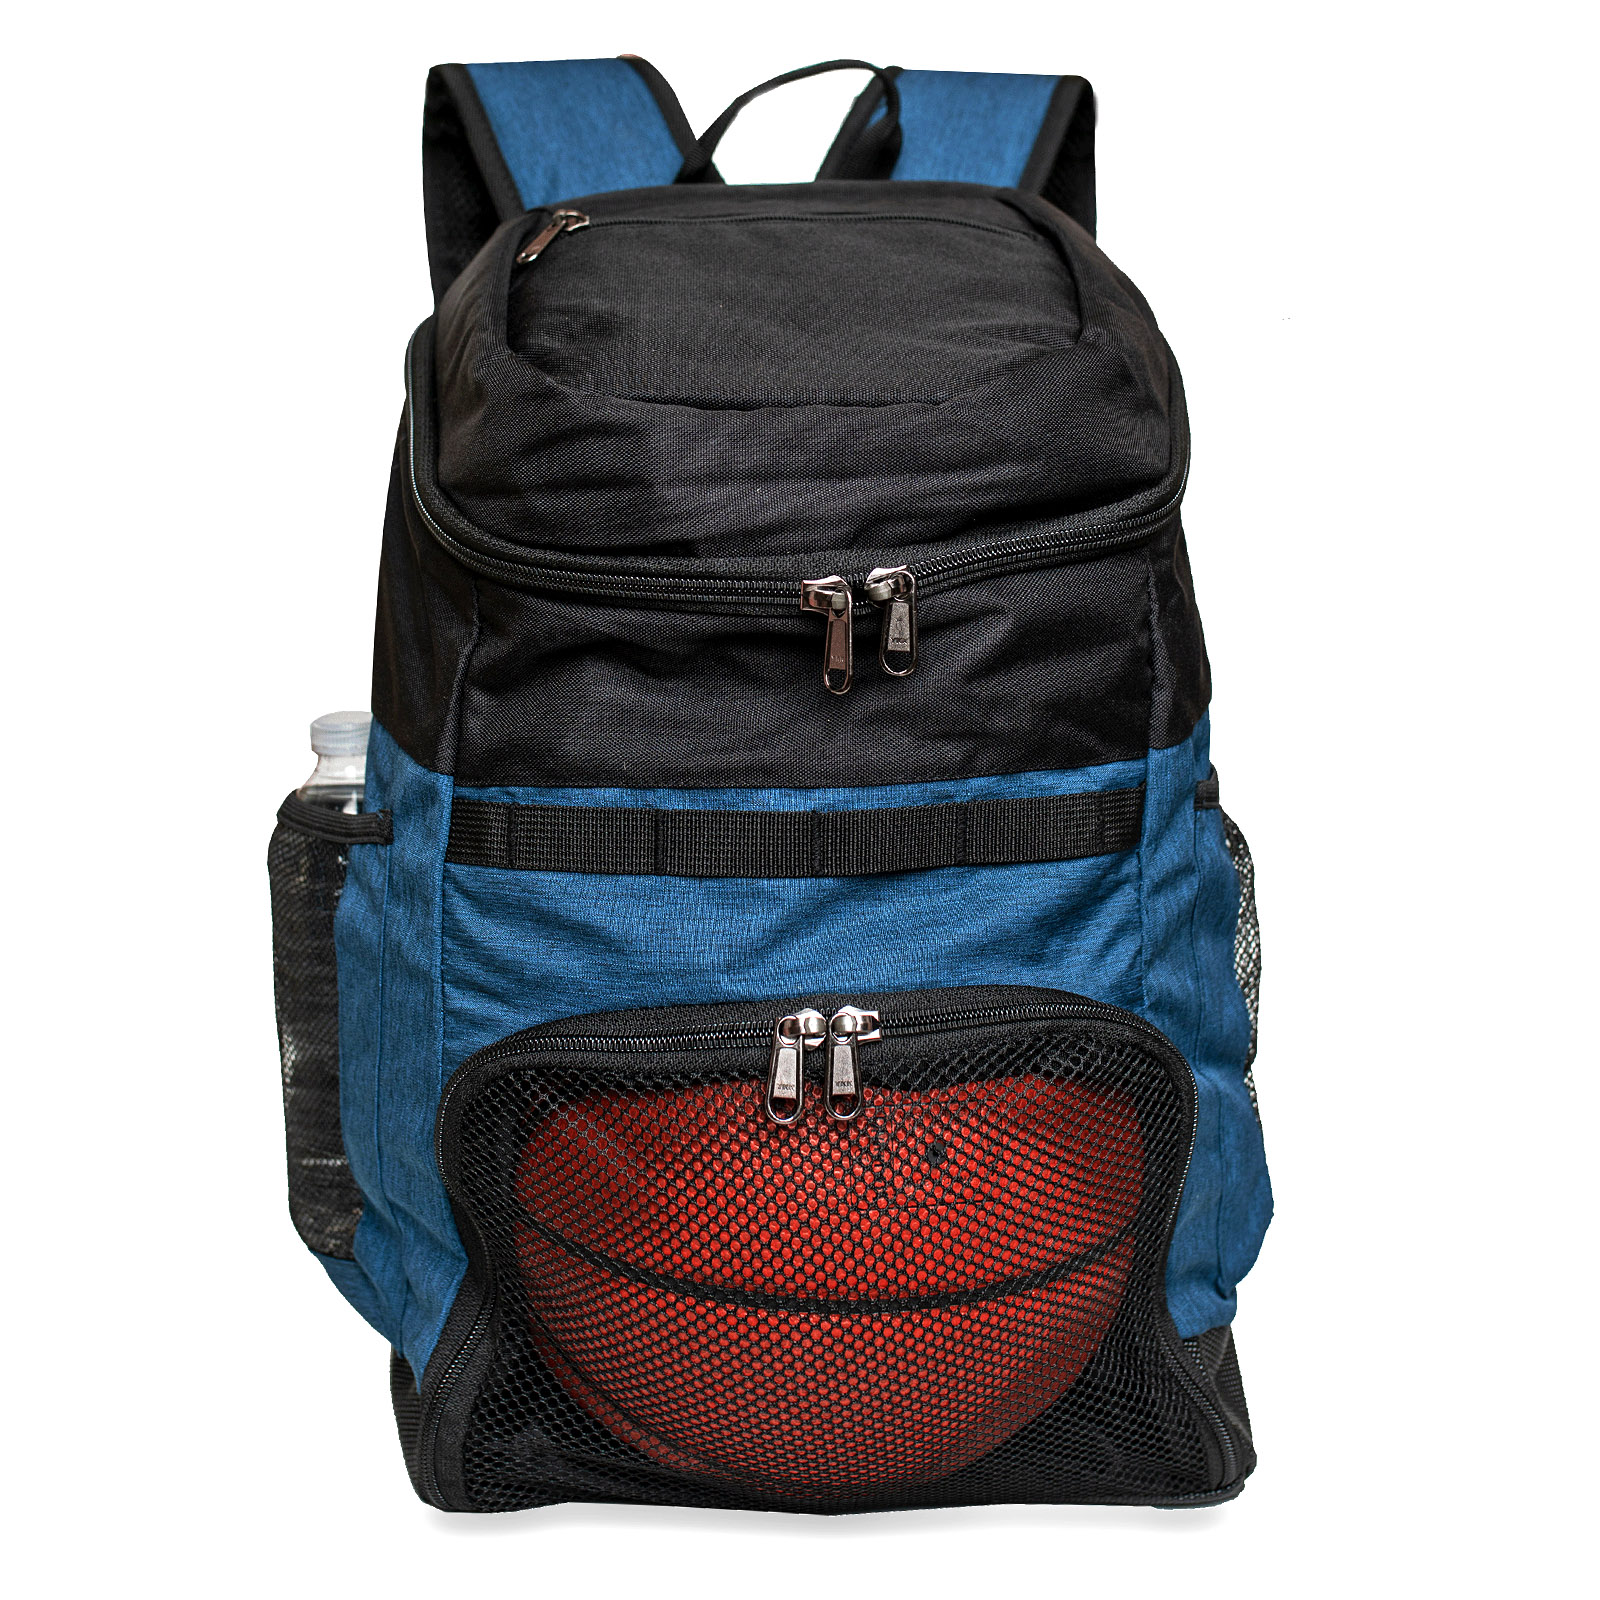 Xelfly Basketball Backpack